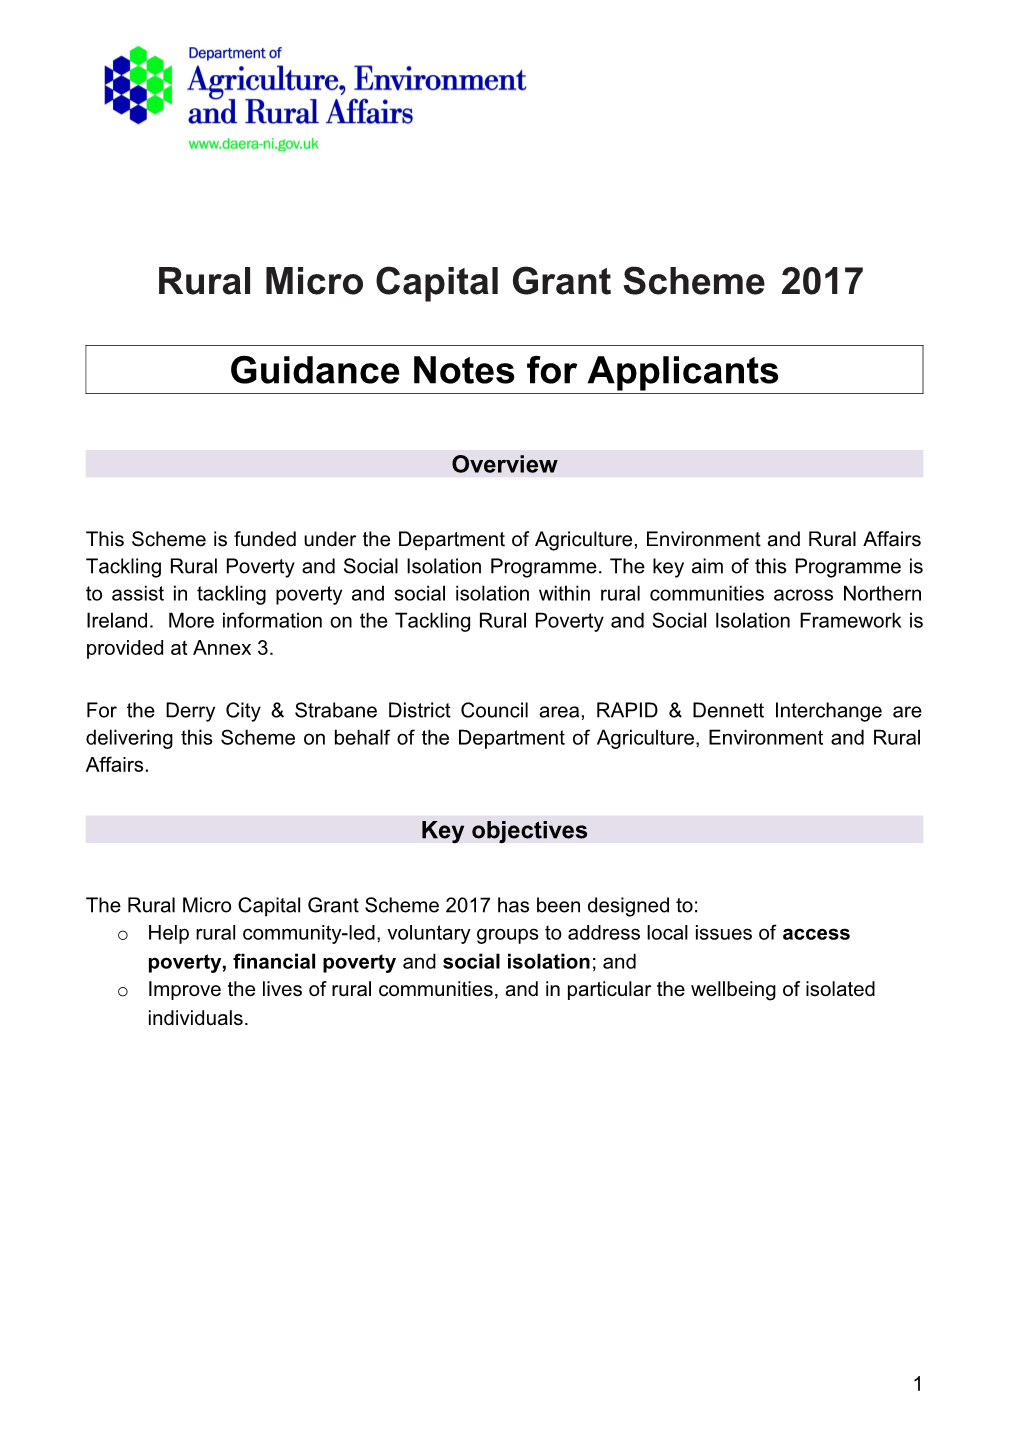 Ruralmicro Capital Grant Scheme 2017